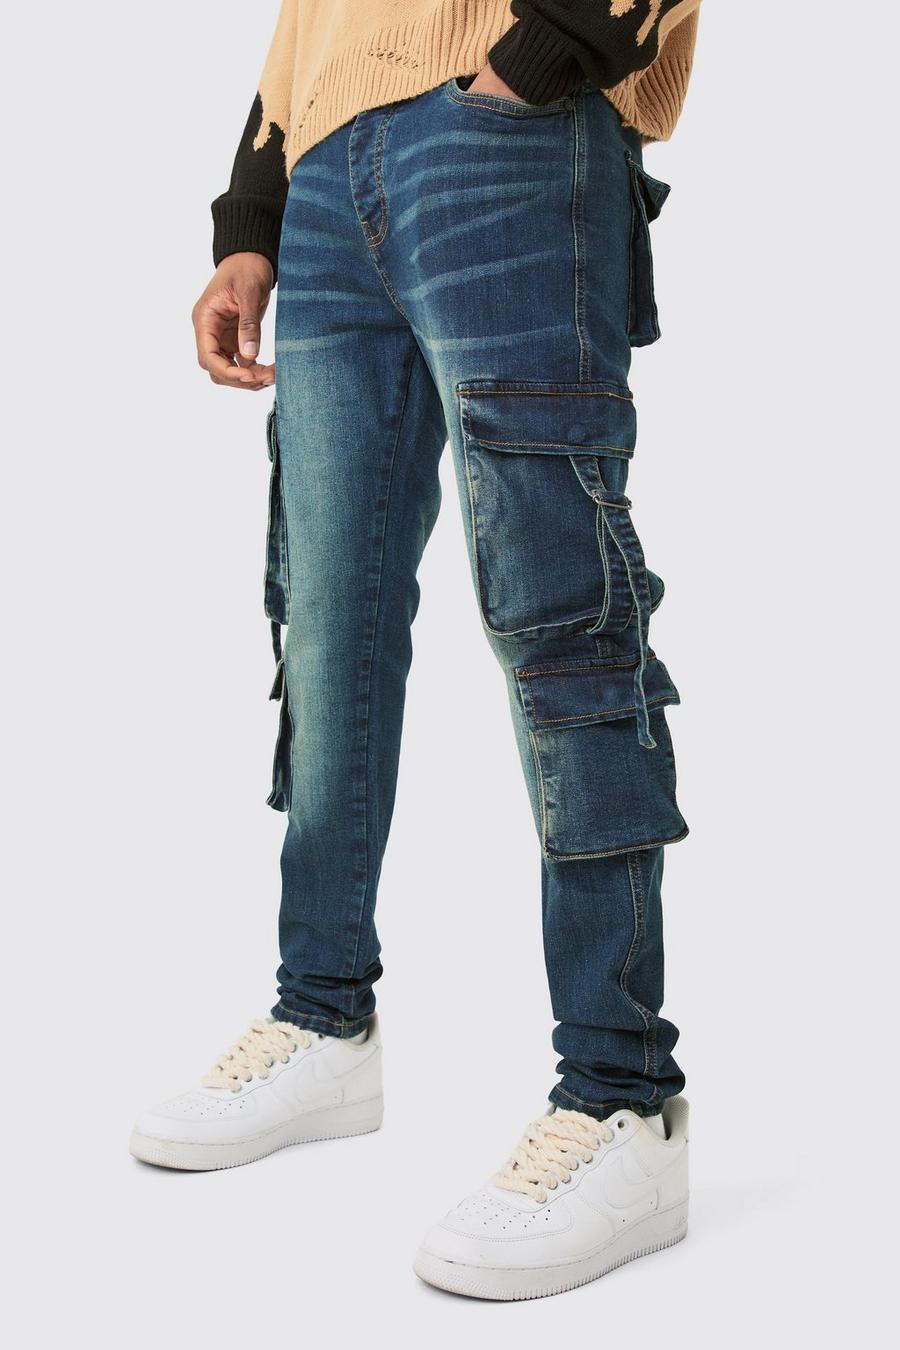 Jeans Tall Skinny Fit in Stretch in lavaggio scuro con tasche Cargo, Dark wash